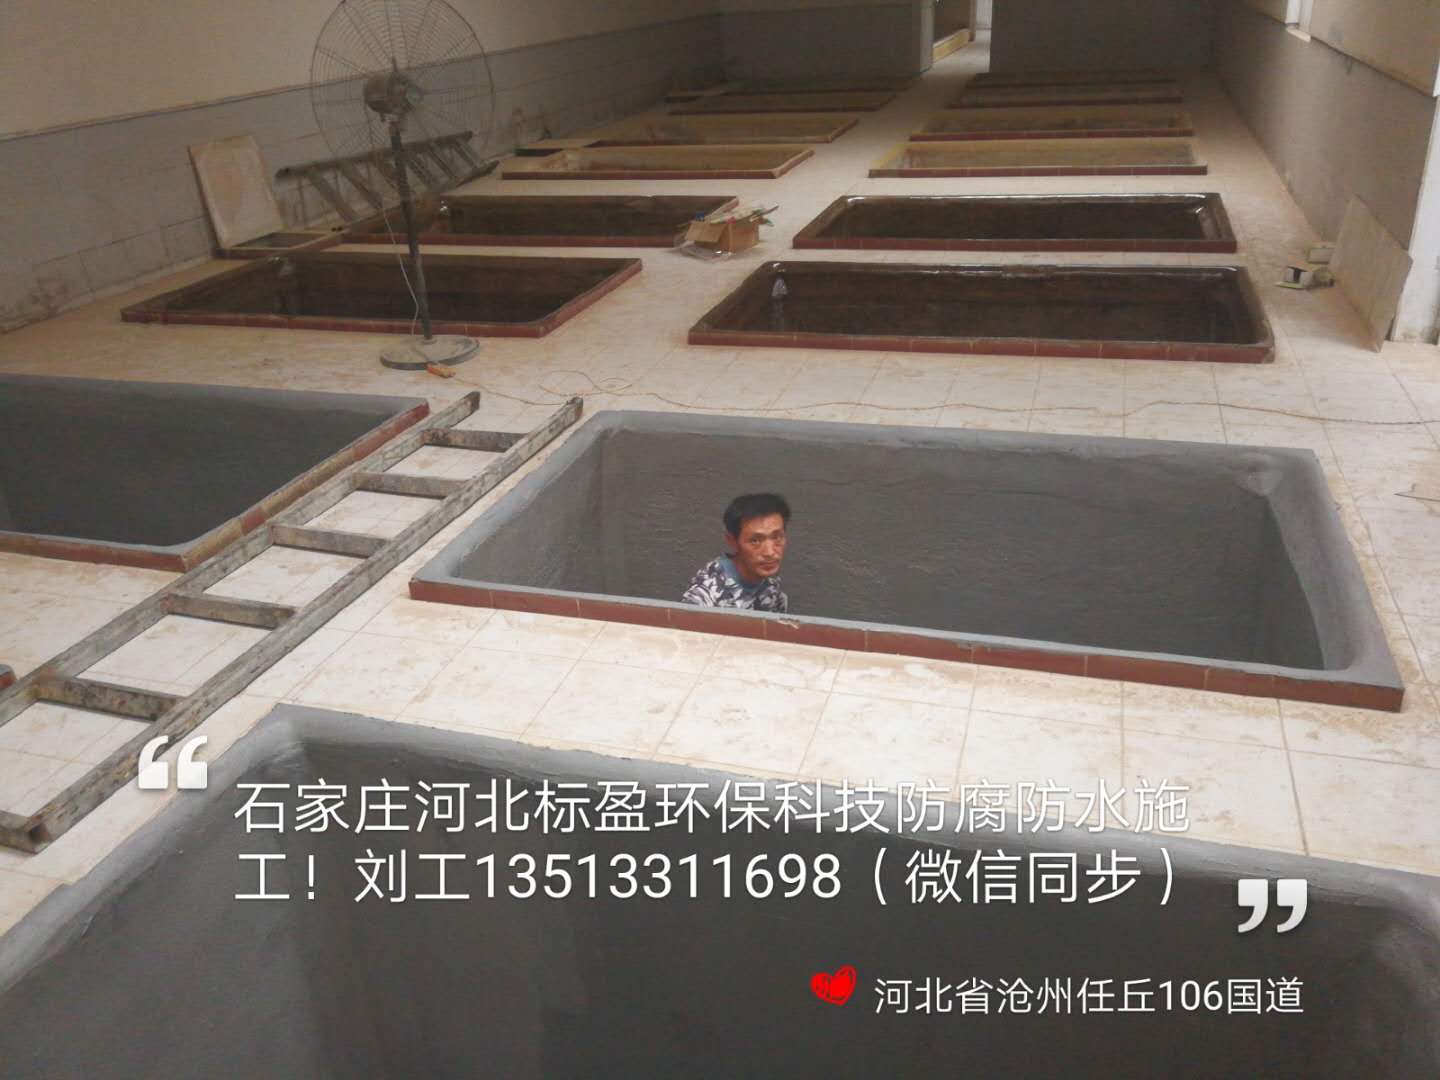 生产厂家供应黑龙江省大兴安岭地区防滑路面陶瓷颗粒胶